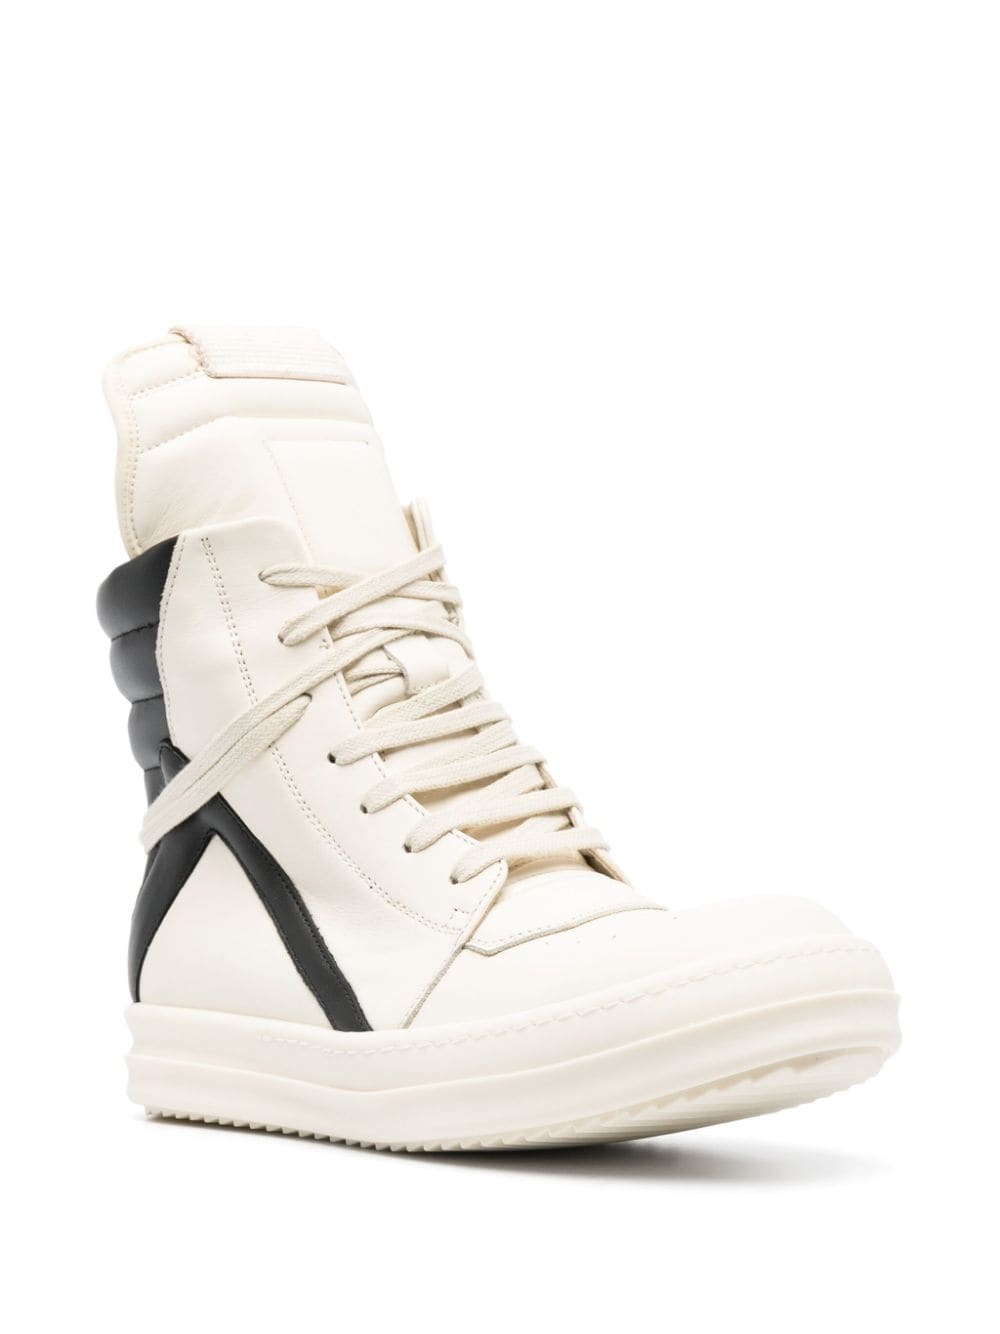 Moody Geobasket leather sneakers - 2